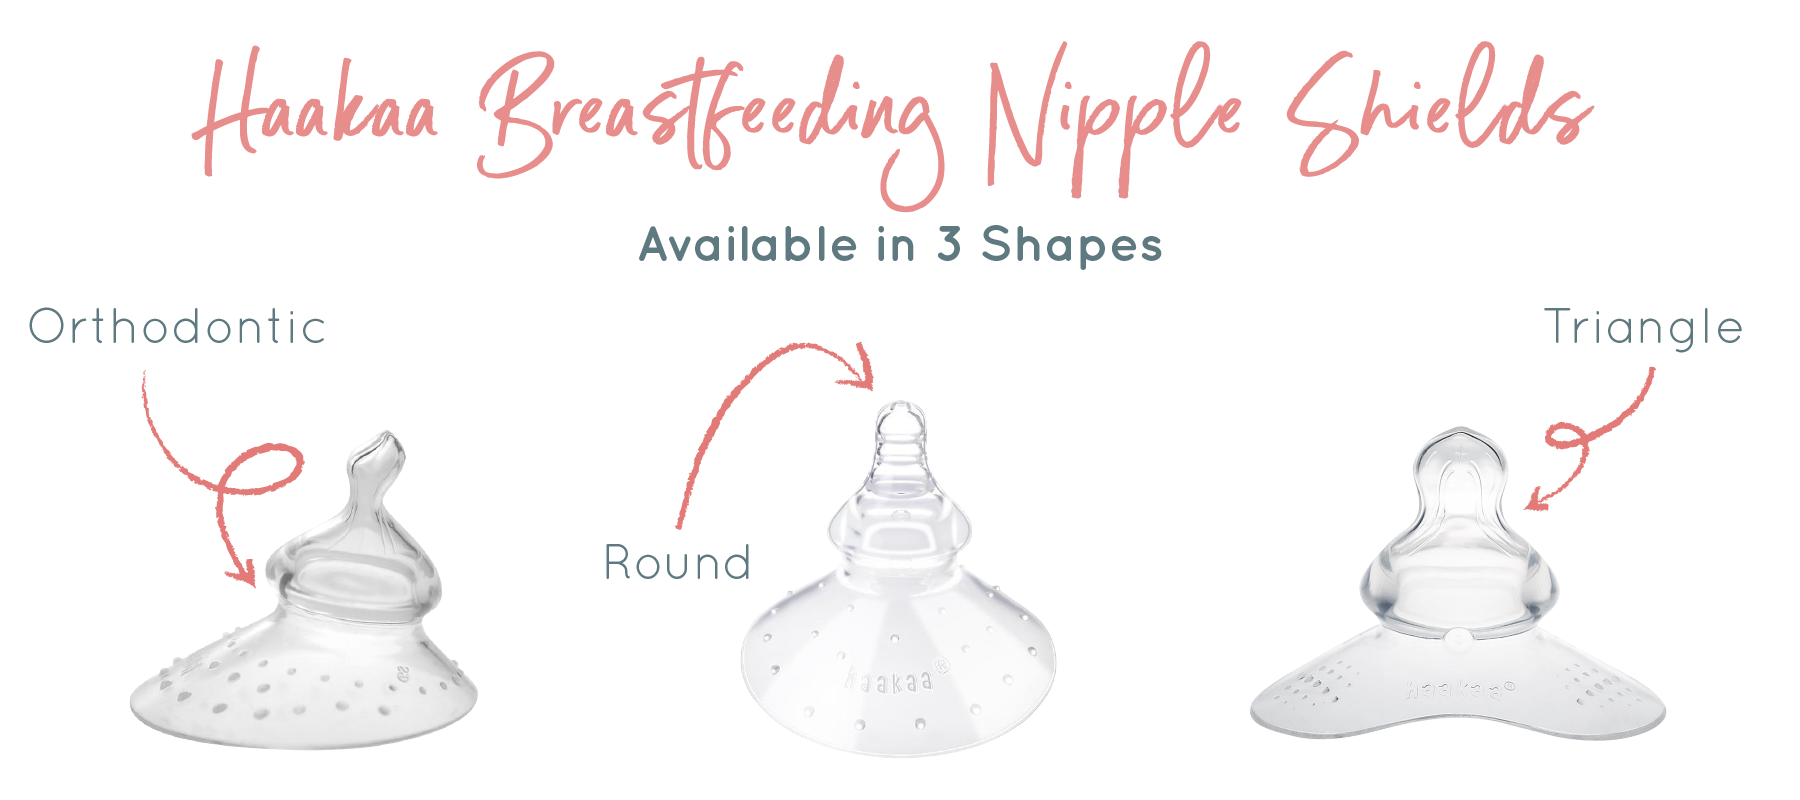 Haakaa Breastfeeding Nipple Shields